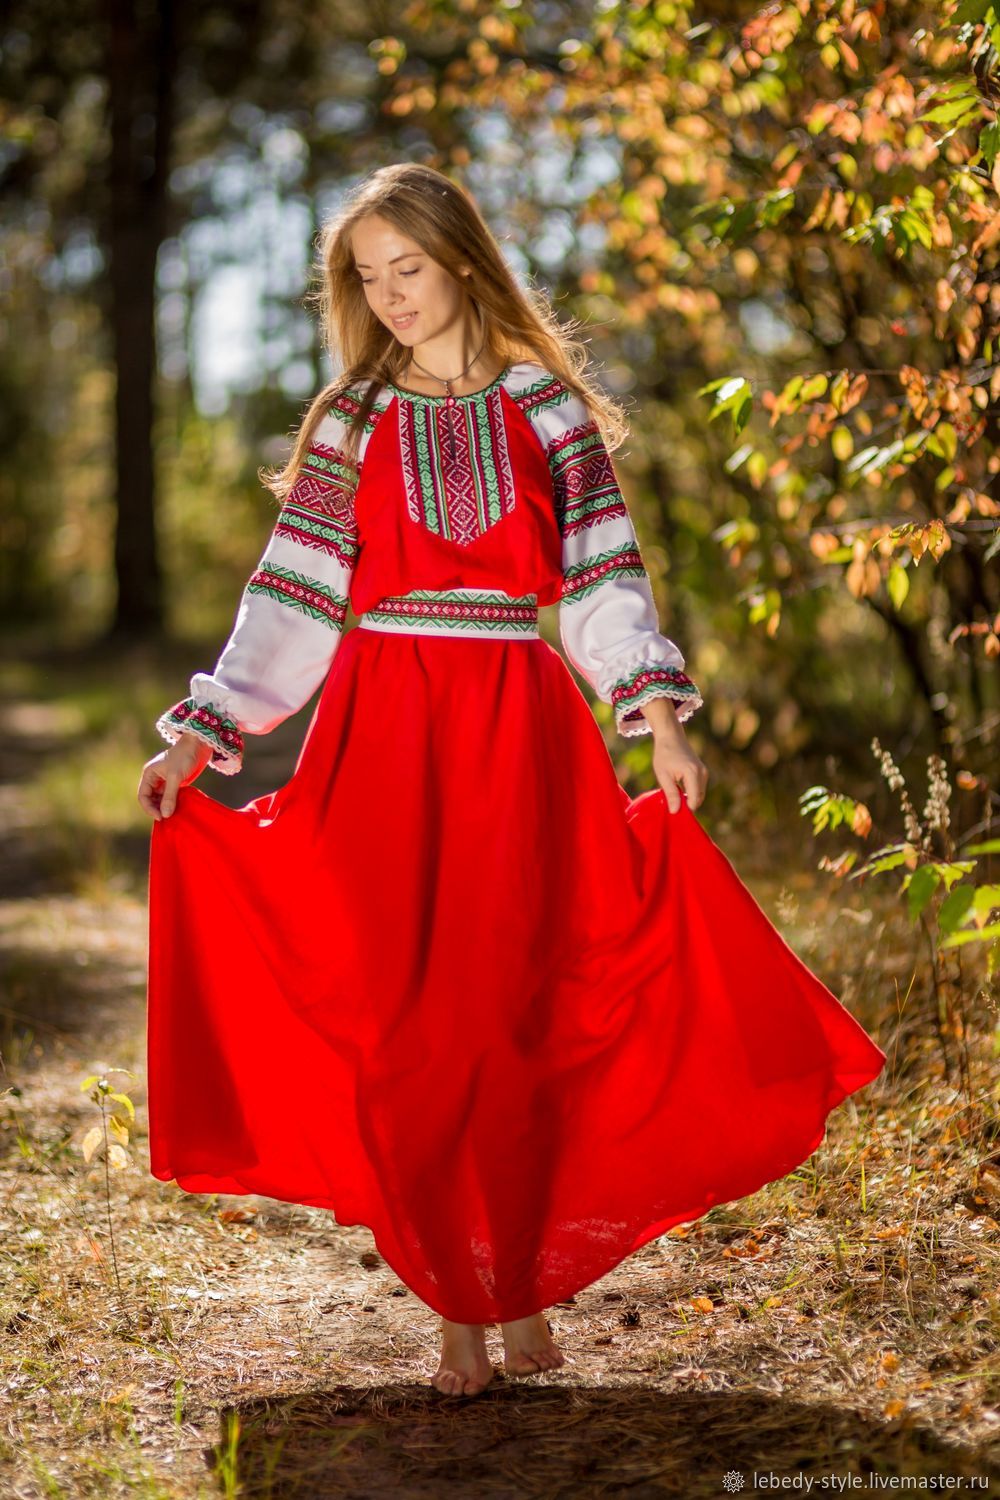 Фото Русская женщина платке, более 95 качественных бесплатных стоковых фото